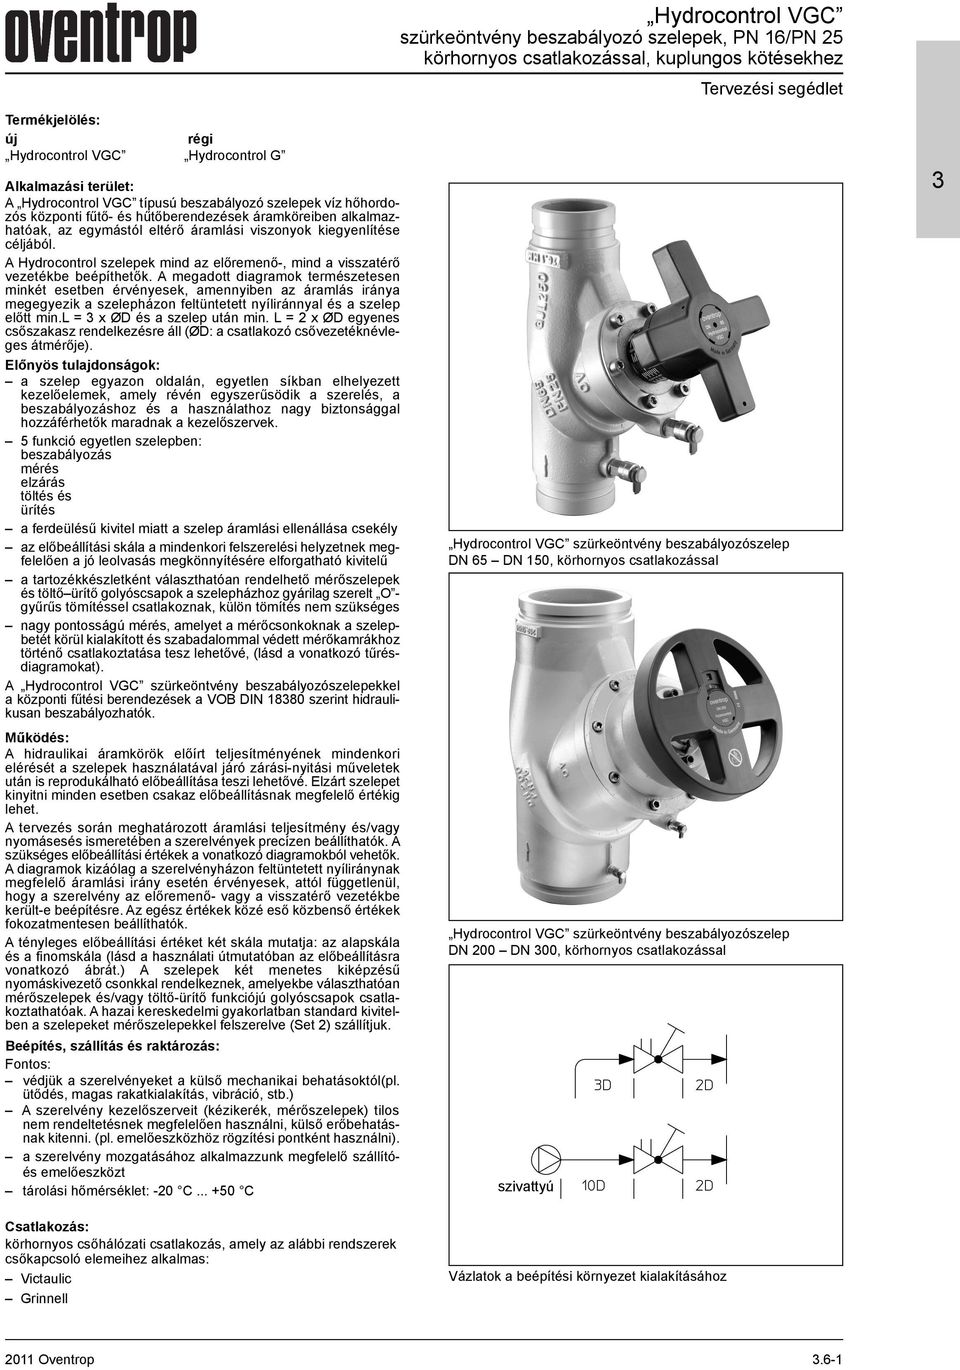 Hydrocontrol VGC szürkeöntvény beszabályozó szelepek, PN 16/PN 25  körhornyos csatlakozással, kuplungos kötésekhez - PDF Free Download